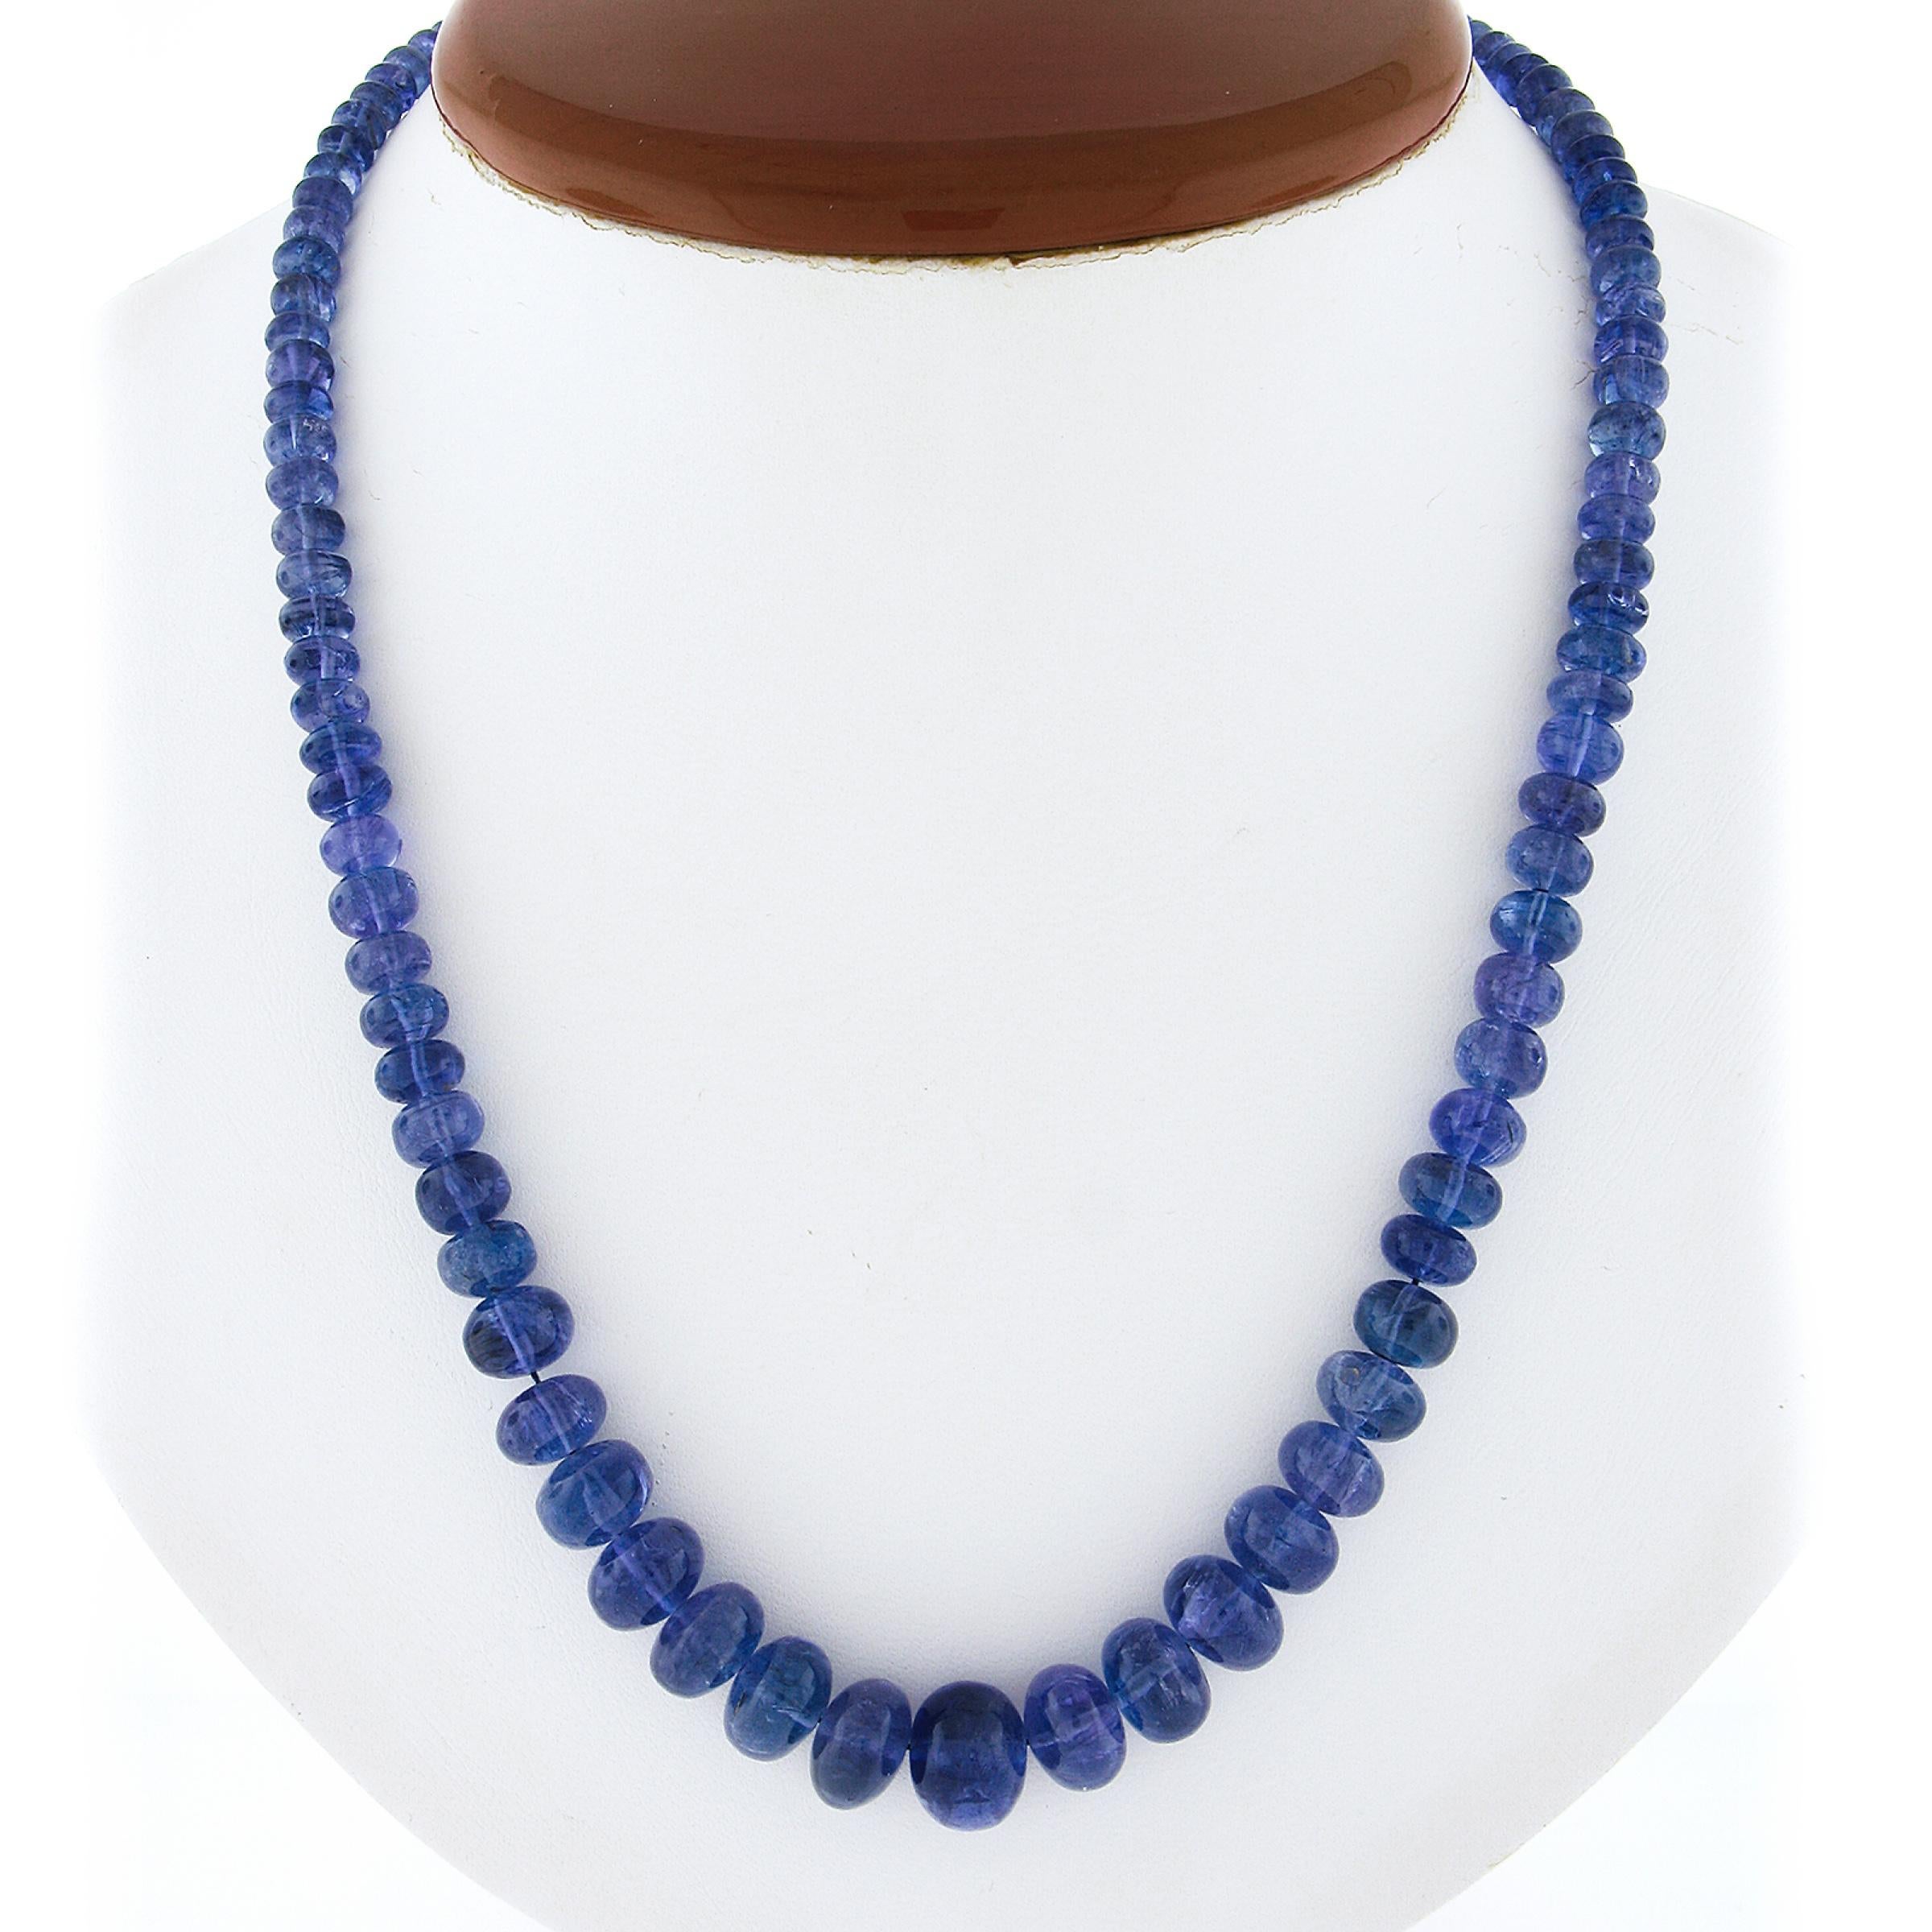 --Sons:--
101 Tanzanite véritable naturelle - perles de forme ronde - enfilées - couleur bleu-violet - 3.6mm à 10.3mm exactes, certifiées
** Voir les détails de la certification ci-dessous pour des informations complètes

MATERIAL : Cordon avec